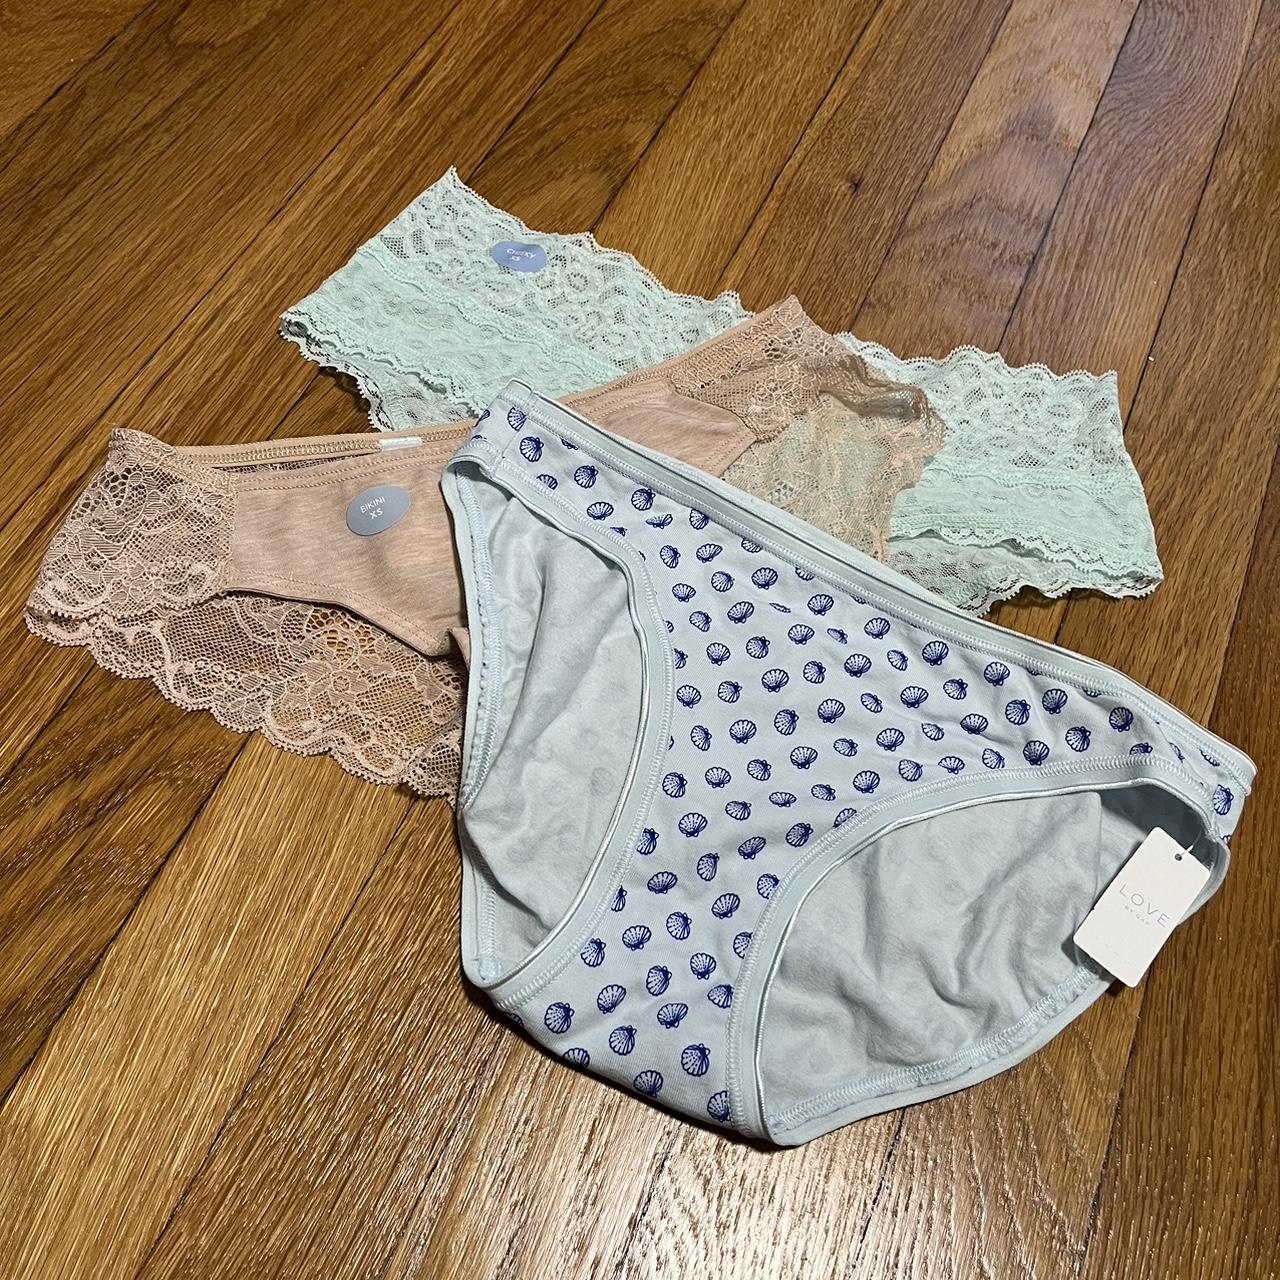 Gap underwear all 3 pairs Never wore were to - Depop